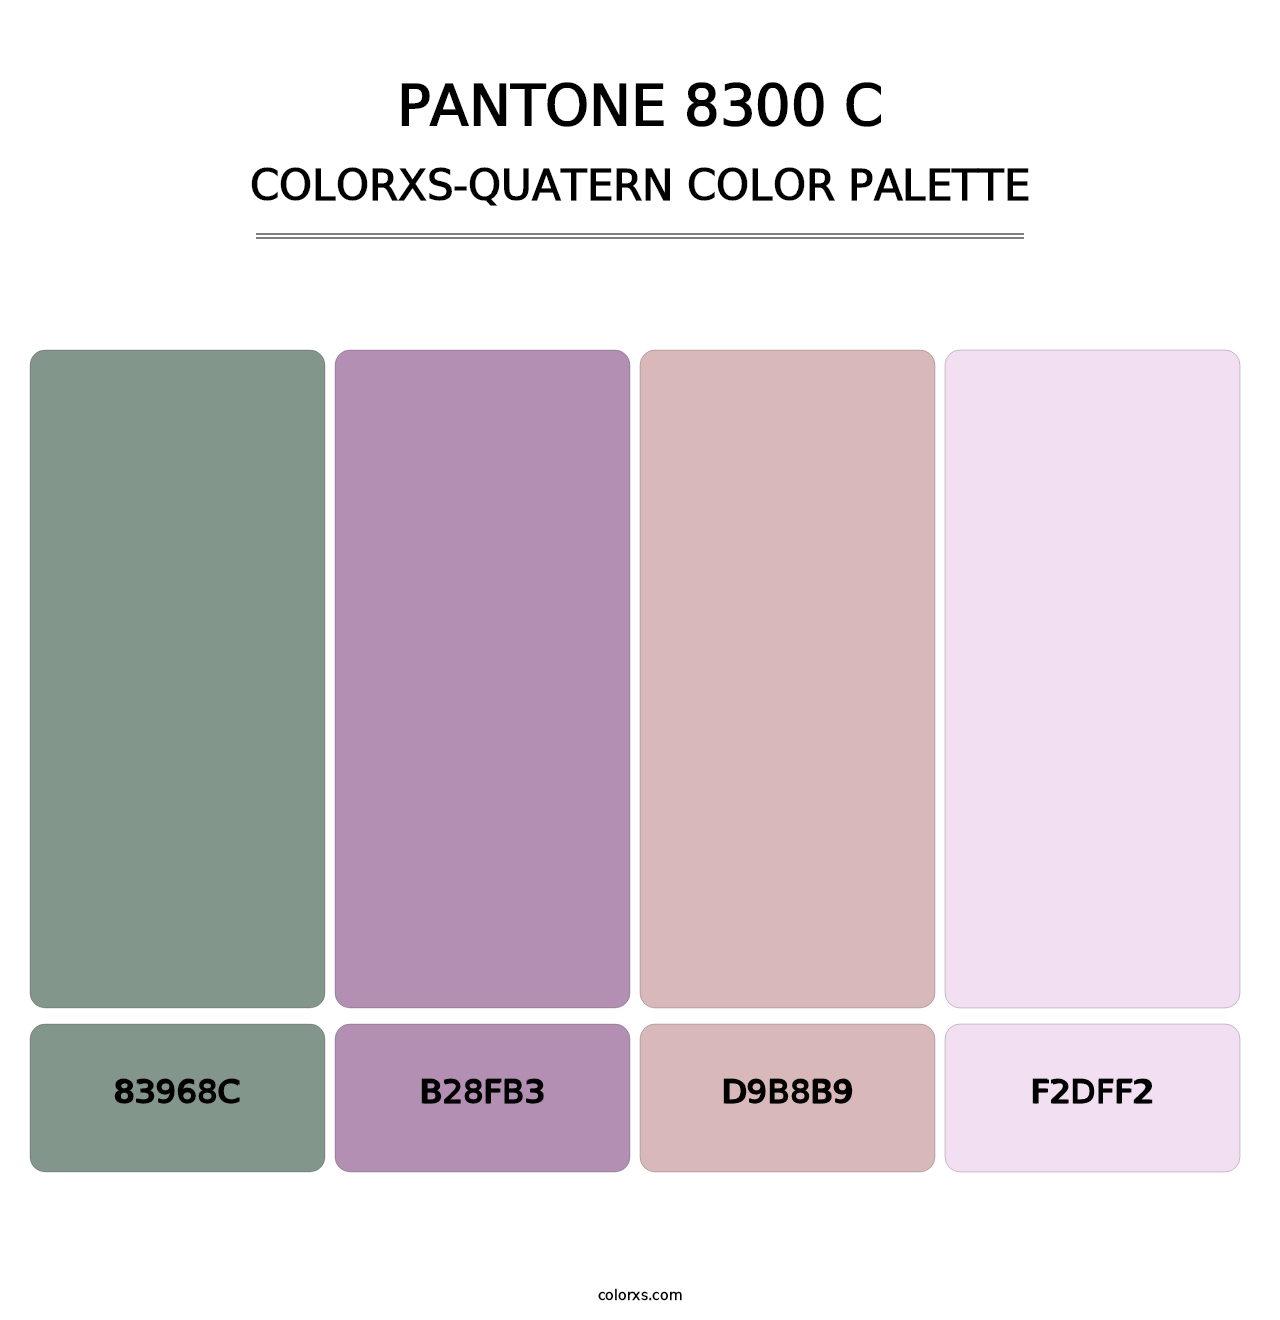 PANTONE 8300 C - Colorxs Quatern Palette